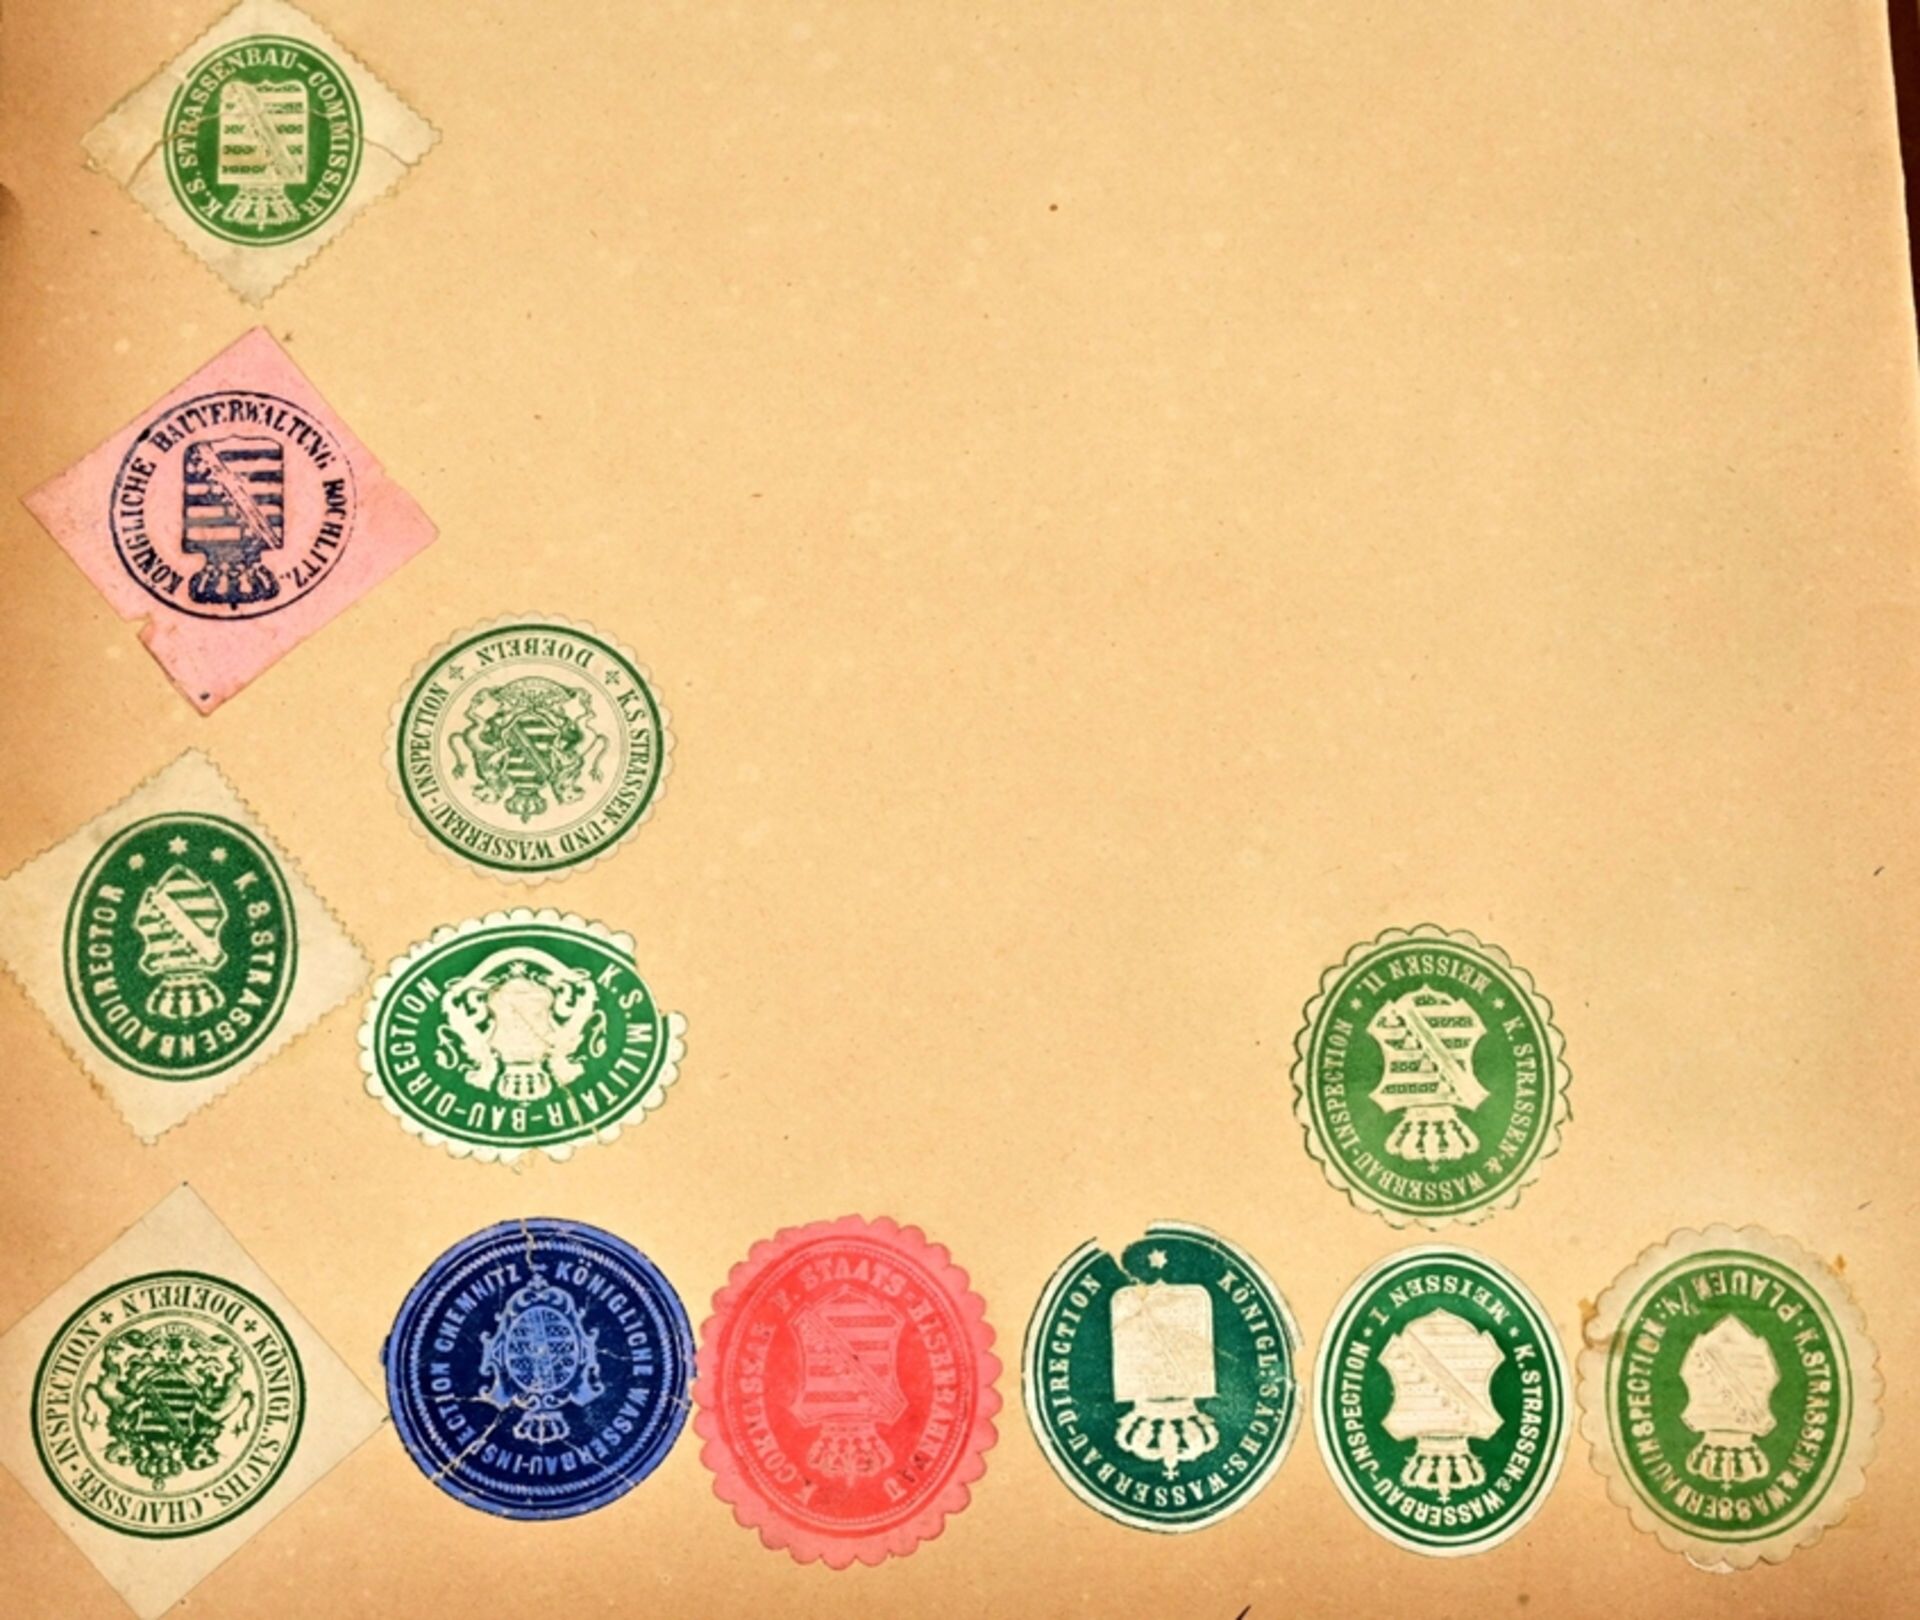 Umfangreiche Siegelmarken - Sammlung überwiegend Sachsen betreffend, lose Blätter mit Papiersiegels - Image 8 of 8